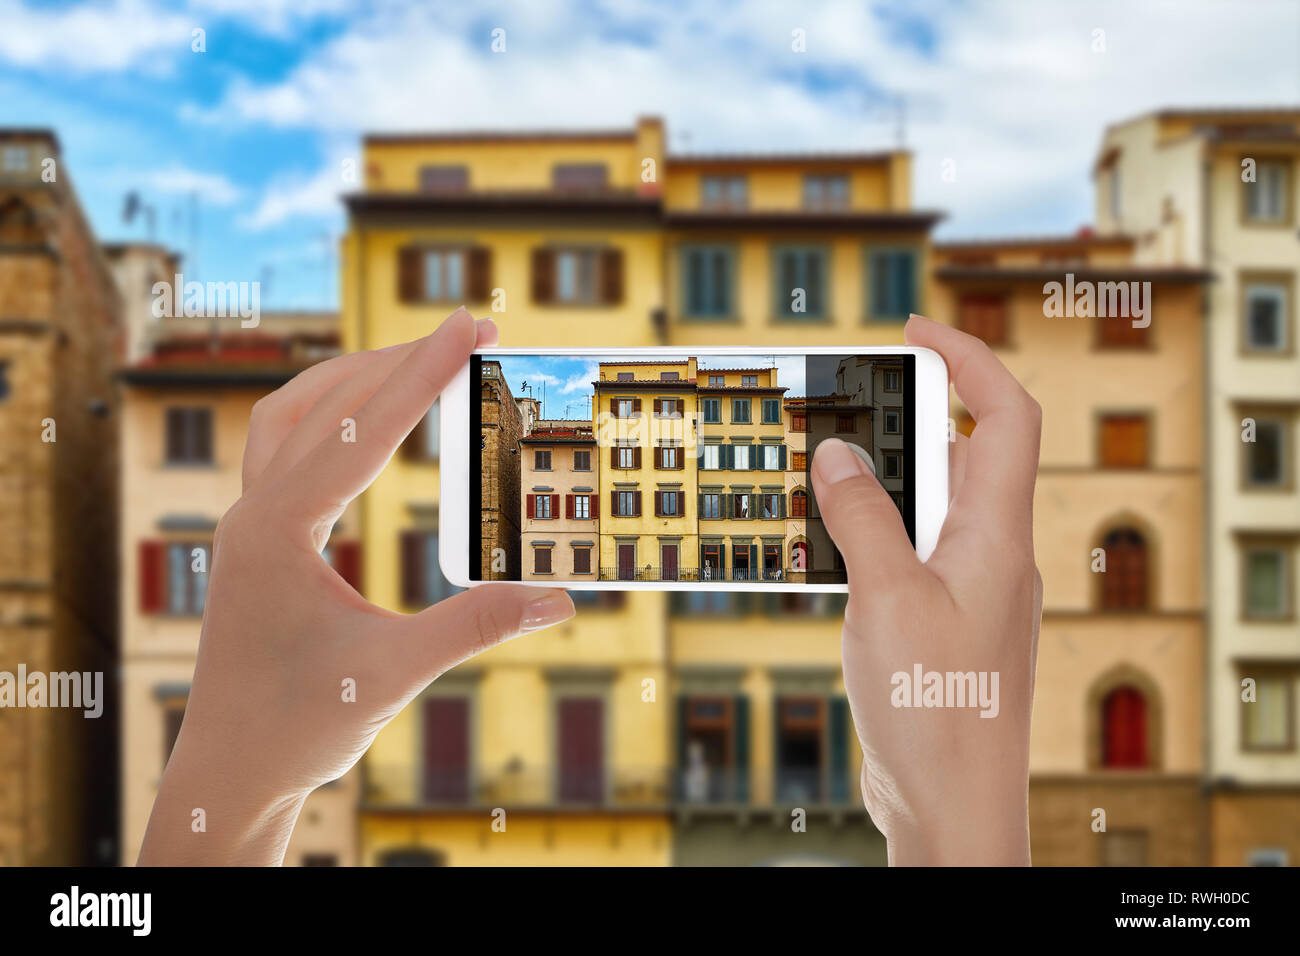 Un hombre está haciendo una foto de hermosas fachadas de viejos edificios italianos en la Piazza della Signoria en Florencia, Italia, en un teléfono móvil Foto de stock